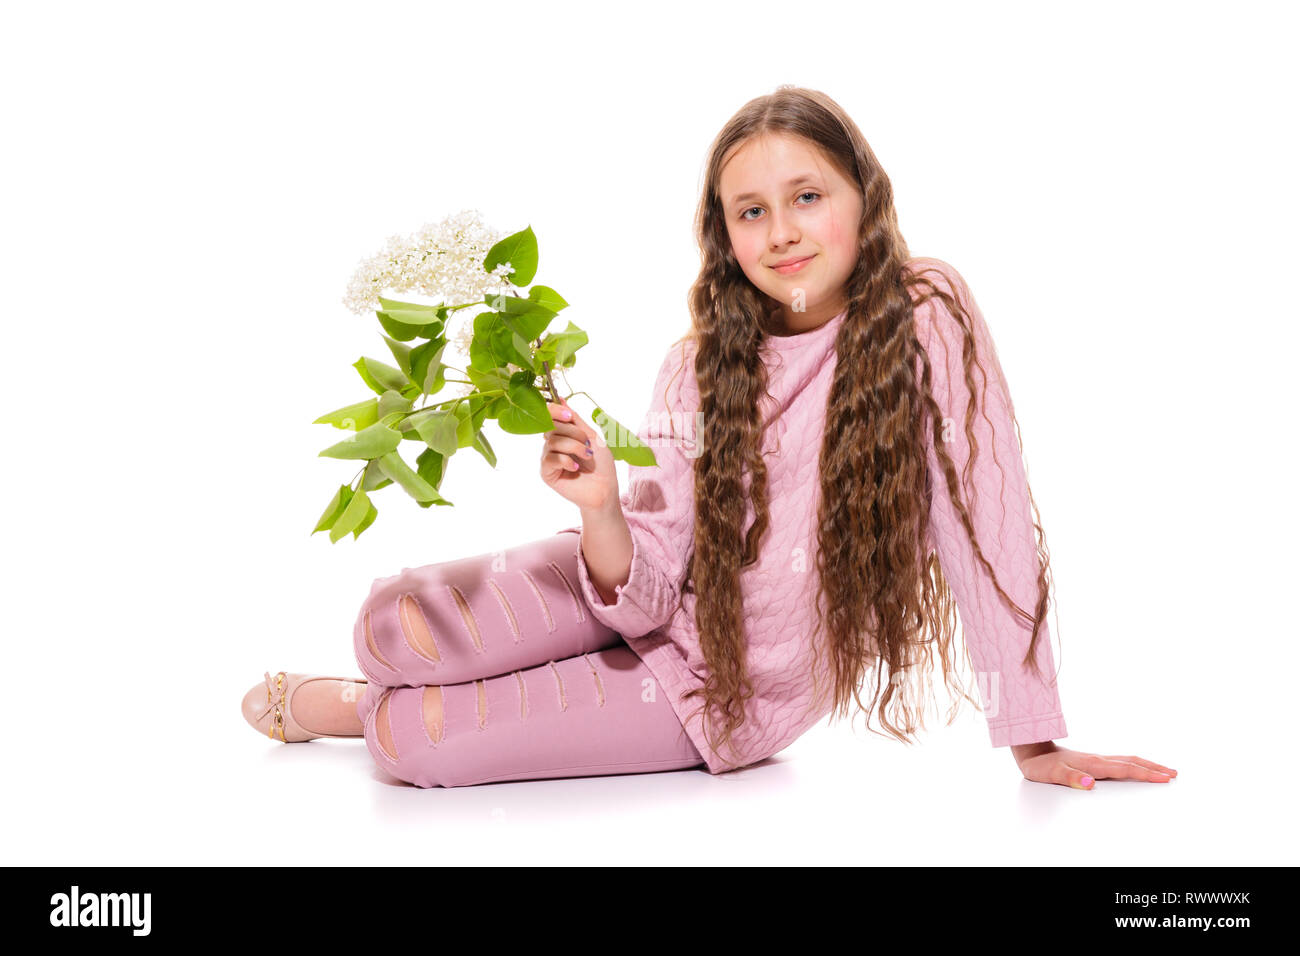 Smiling girl 10-11 ans dans un costume rose lilas blanc tenant dans ses mains. L'isolement sur un fond blanc Banque D'Images